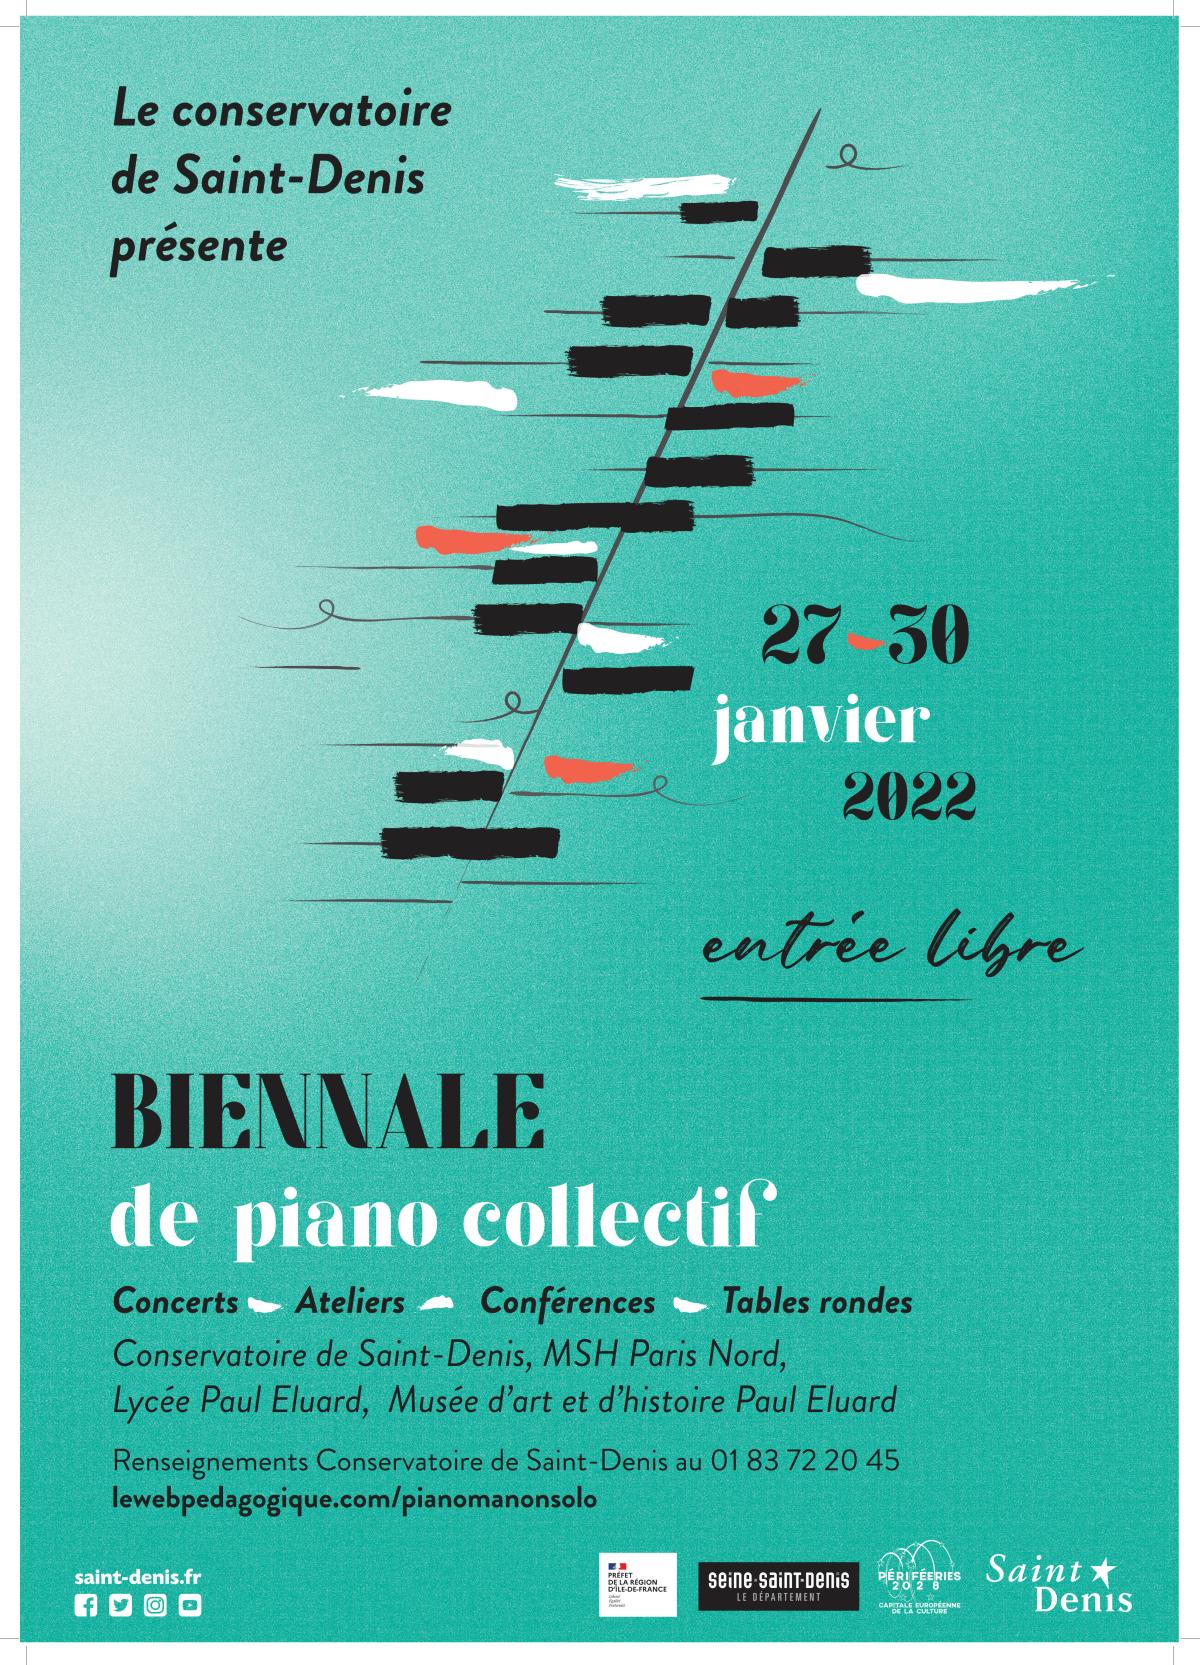 Le piano multiple : un bilan de la Biennale de piano collectif